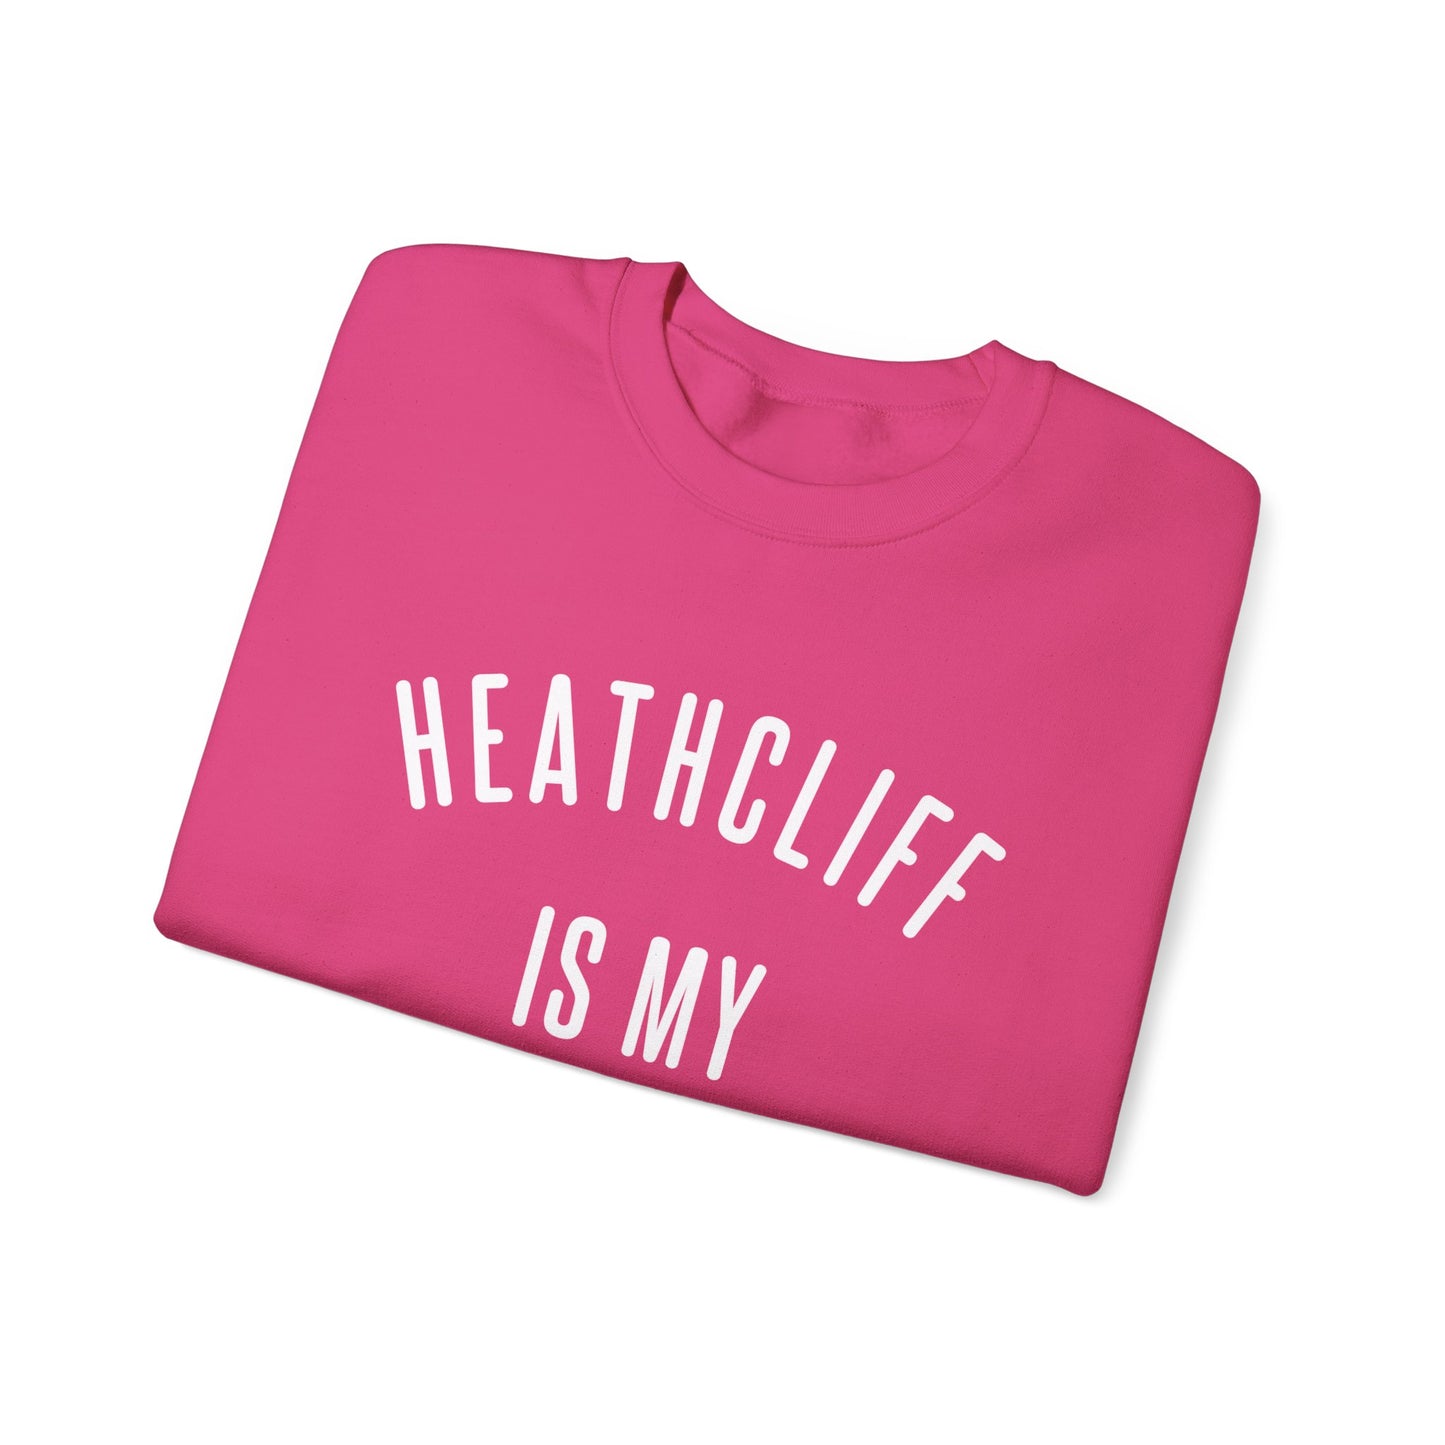 Heathcliff is my Valentine Crewneck Sweatshirt